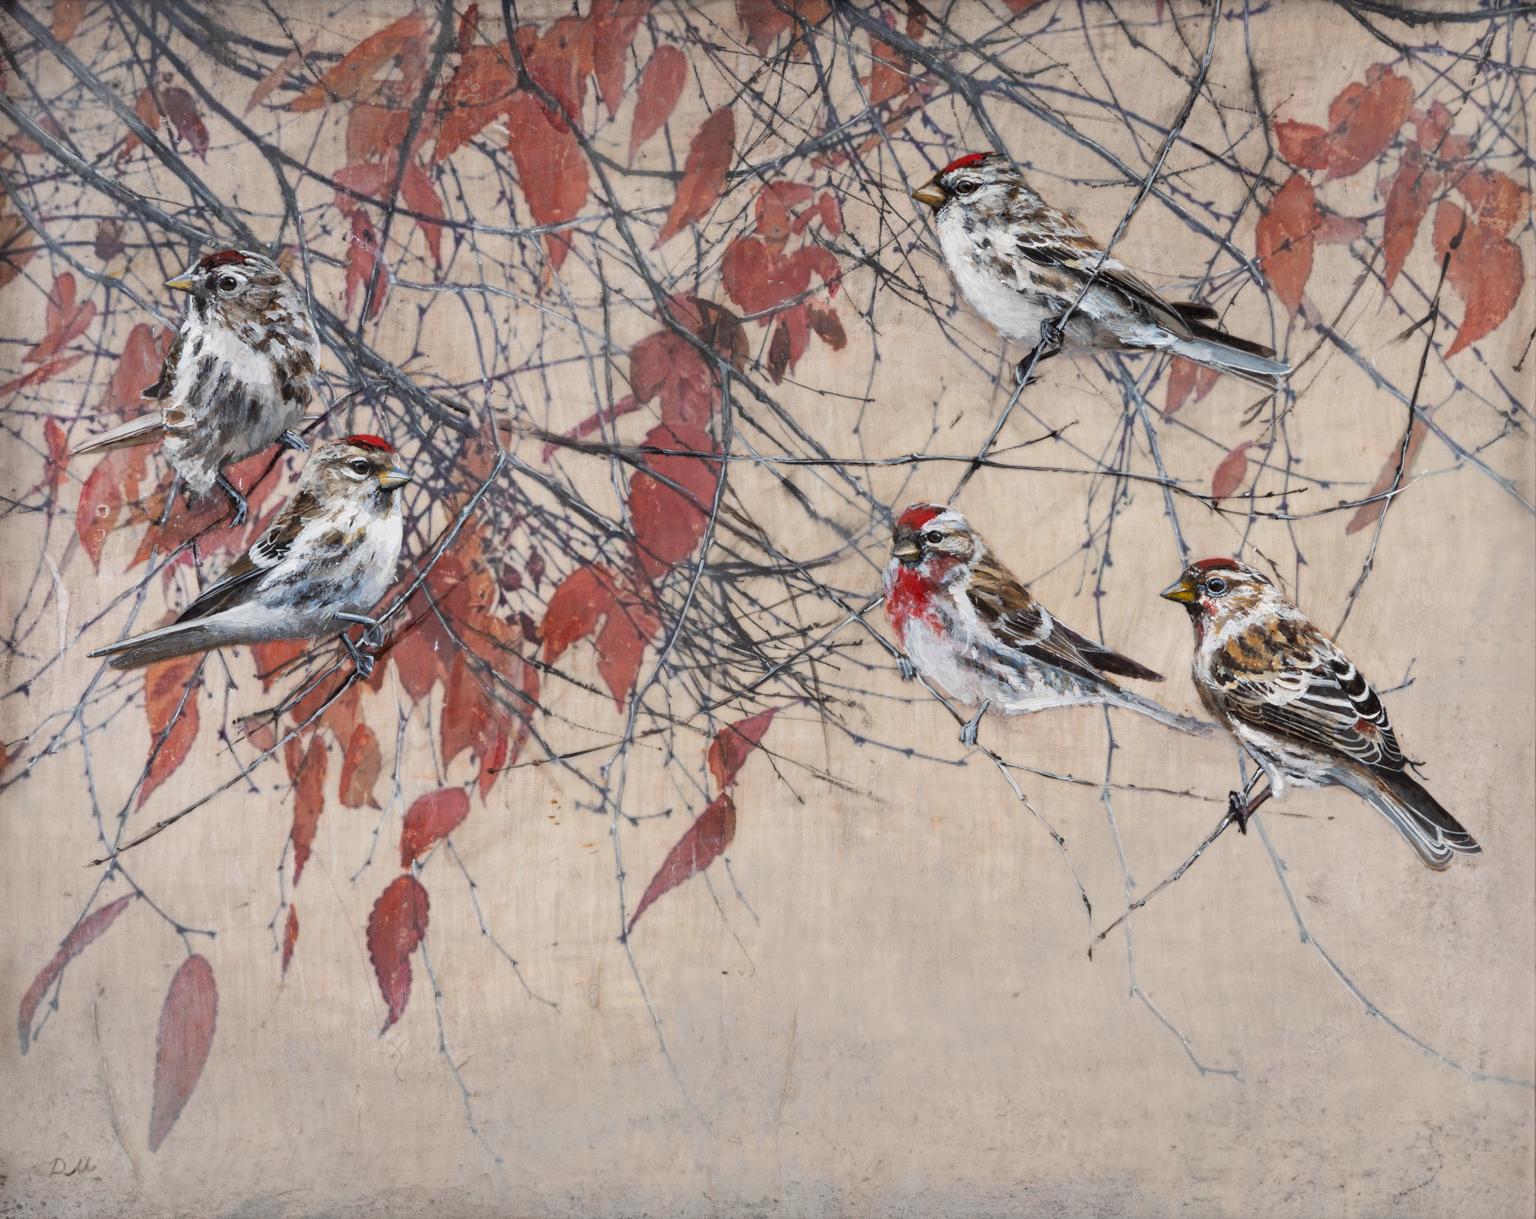 Zeitgenössisches mehrlagiges Enkaustik-Gemälde von Vögeln in einem Baum  – Mixed Media Art von Diana Majumdar